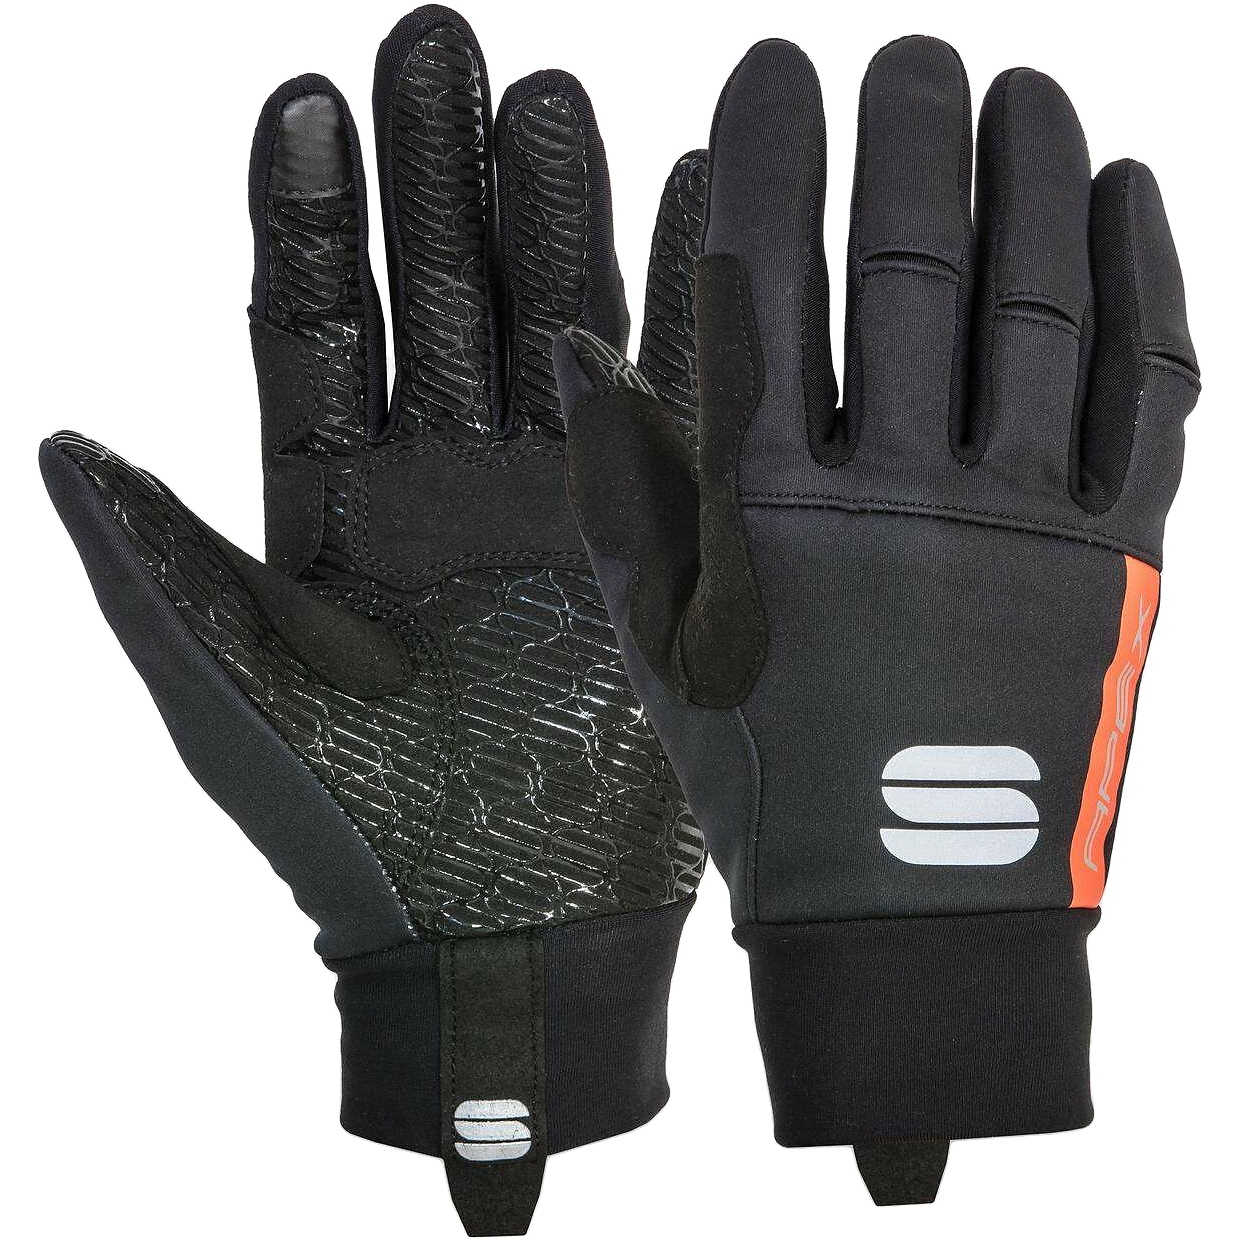 Produktbild von Sportful Apex Handschuhe - 002 Schwarz